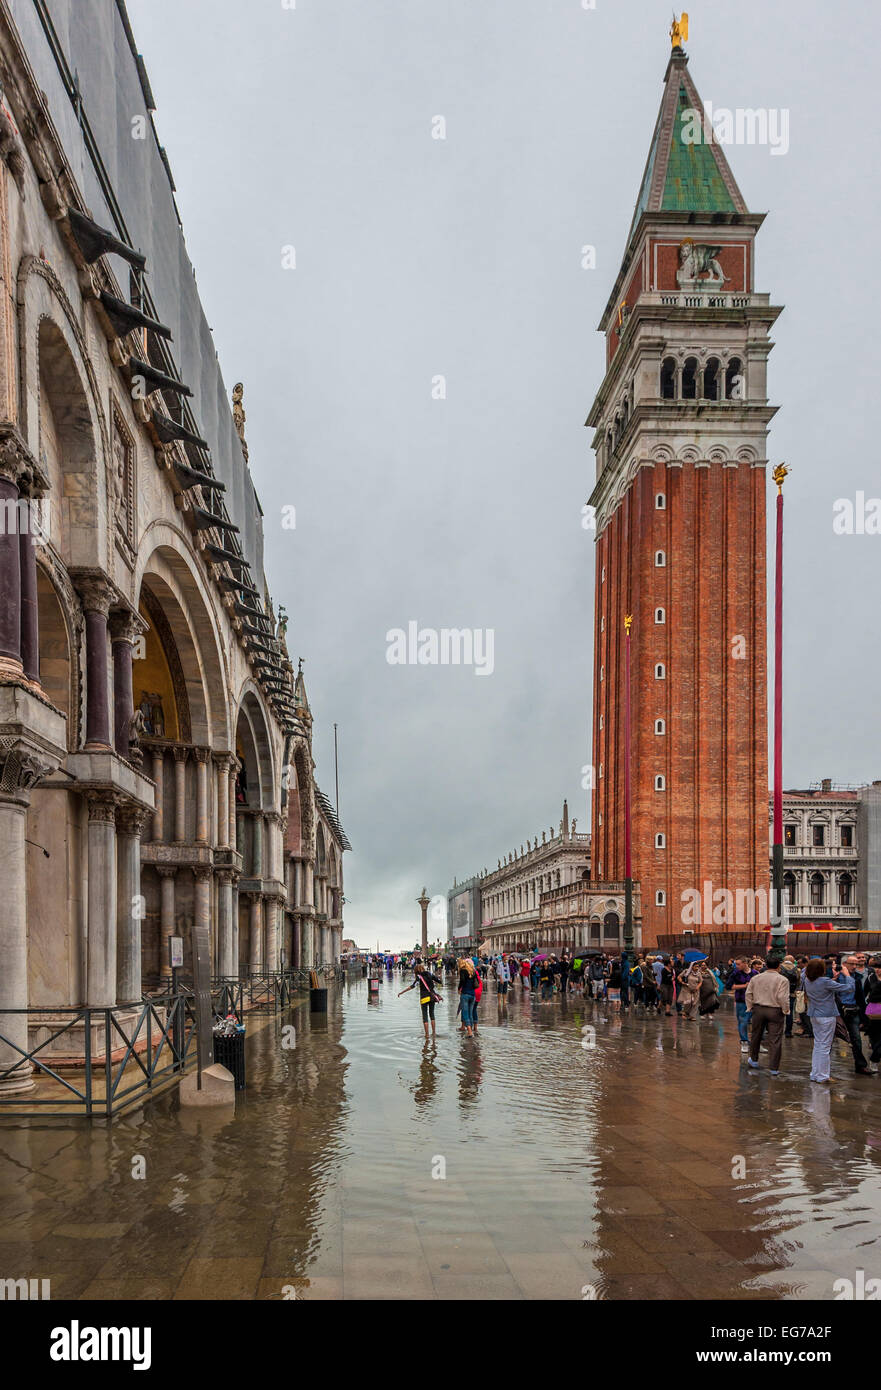 Venezia, Italia - Giugno, 07: alluvione a Venezia, l'acqua alta in Piazza San Marco in giugno, 07, 2011 a Venezia, Italia Foto Stock